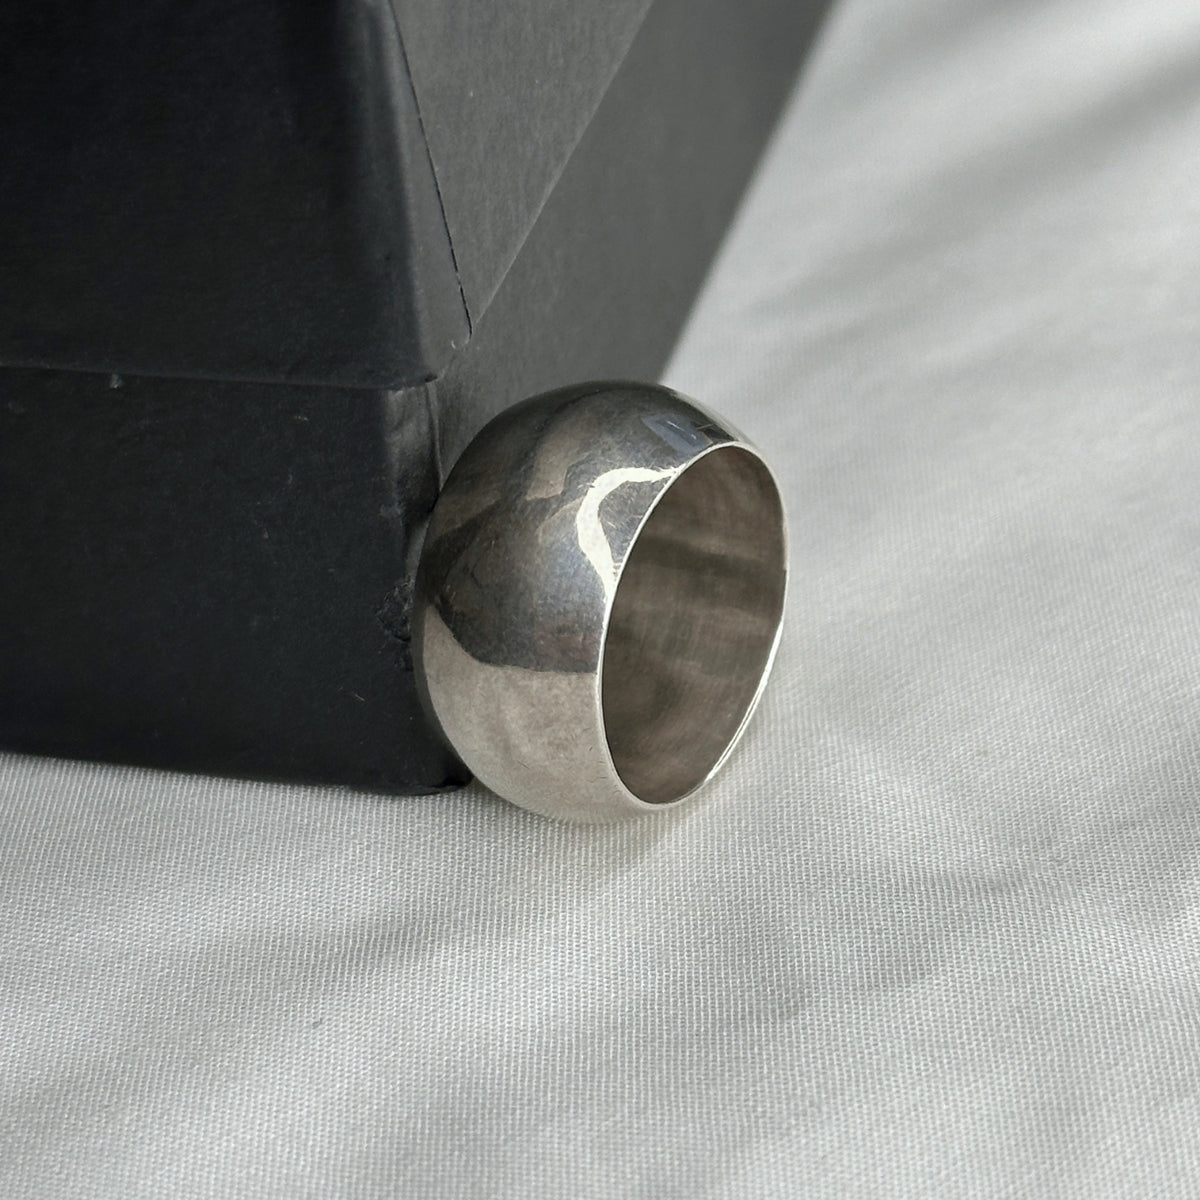 Hobbs Plain Silver 925 Men's Ring